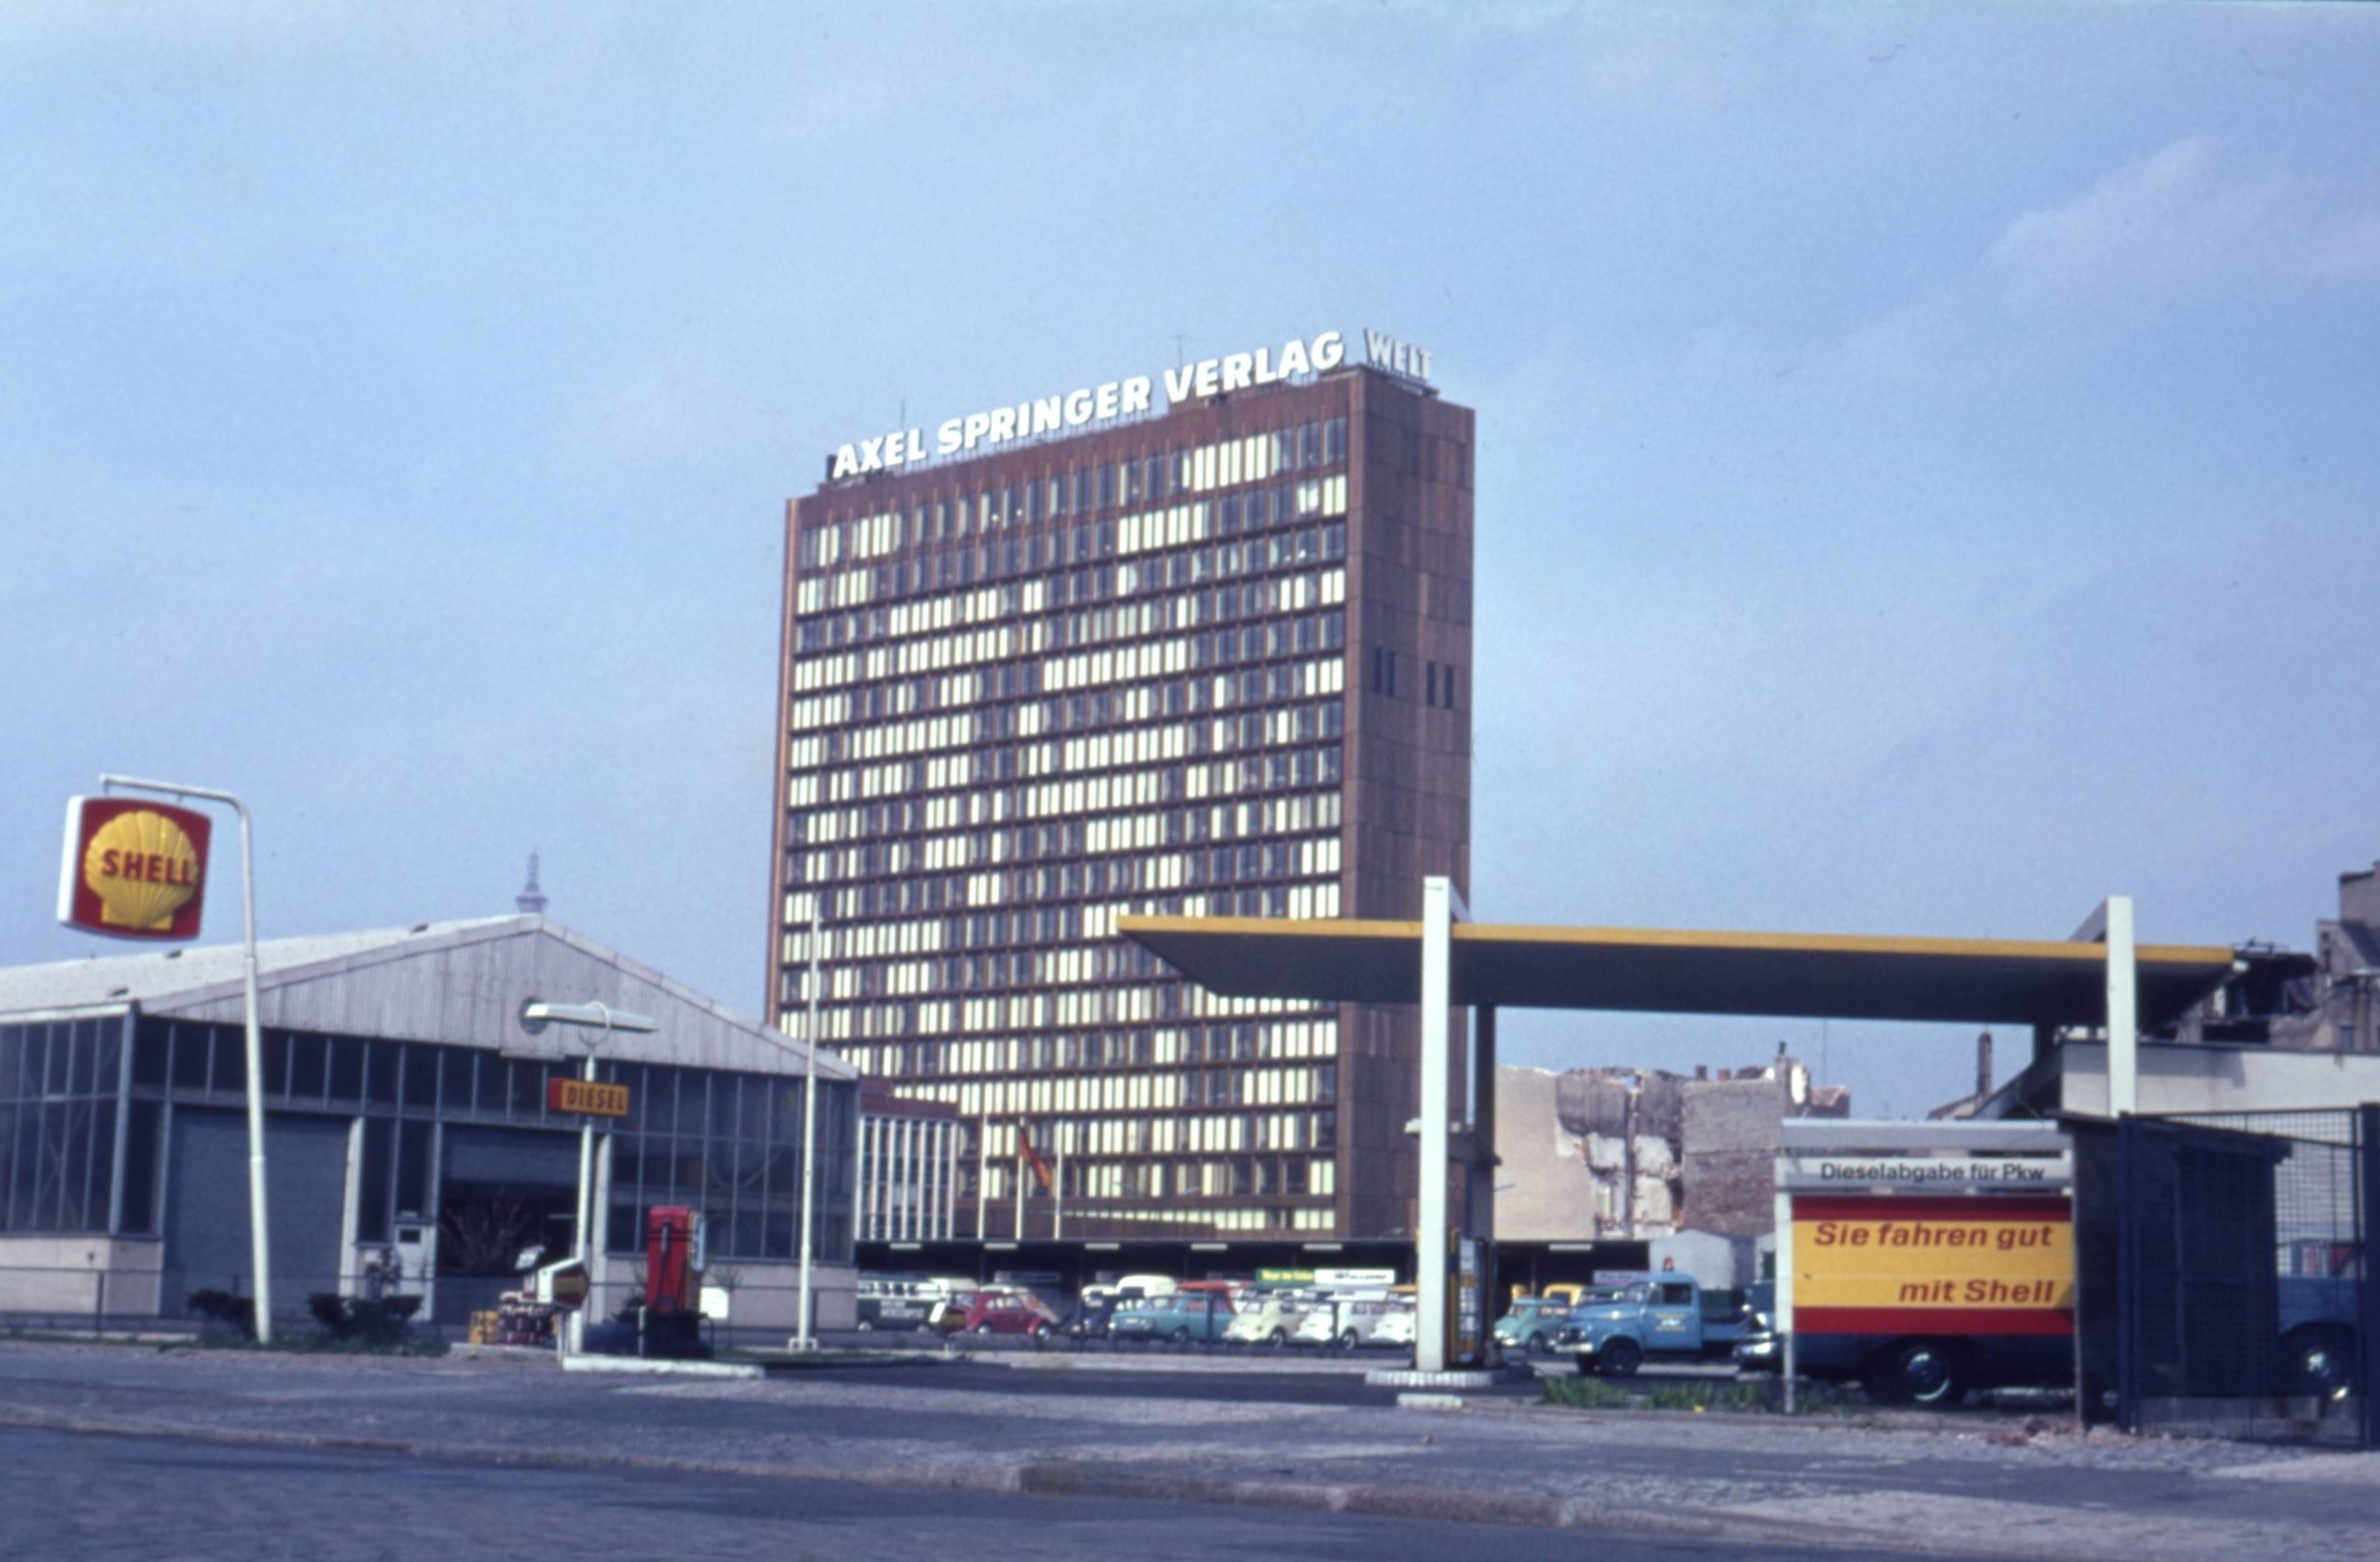 Axel Springer Hochhaus mit Shell Tankstelle, Berlin um 1966. Foto: Imago/Serienlicht